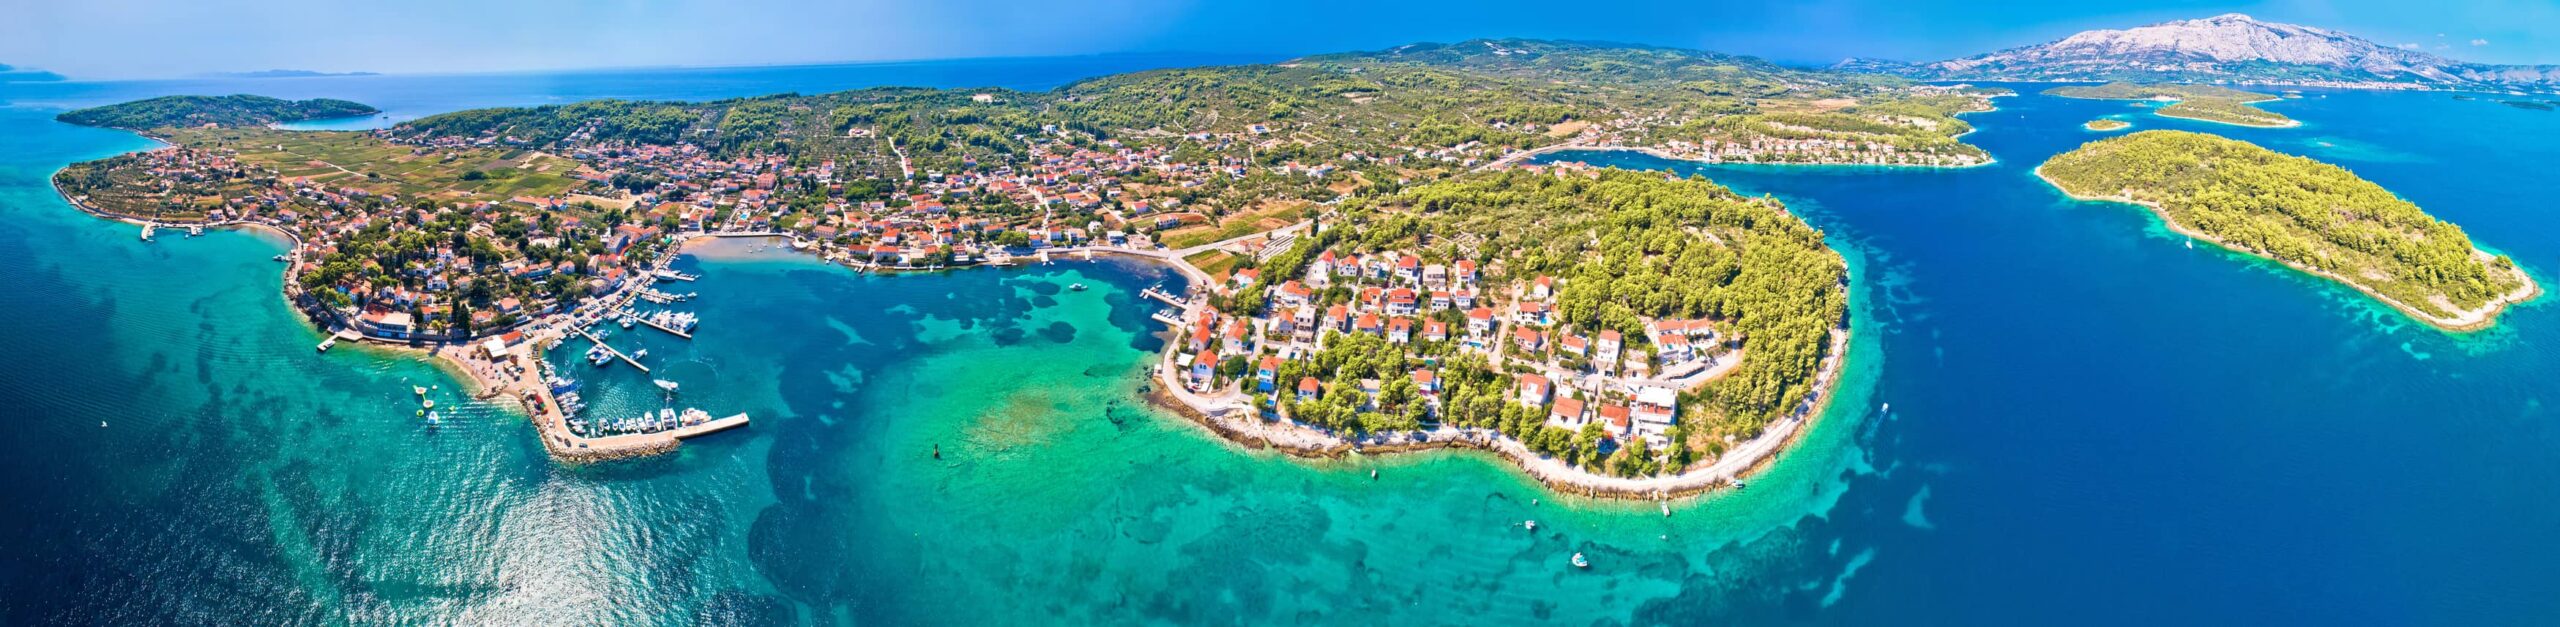 Croatian island holidays in Korcula